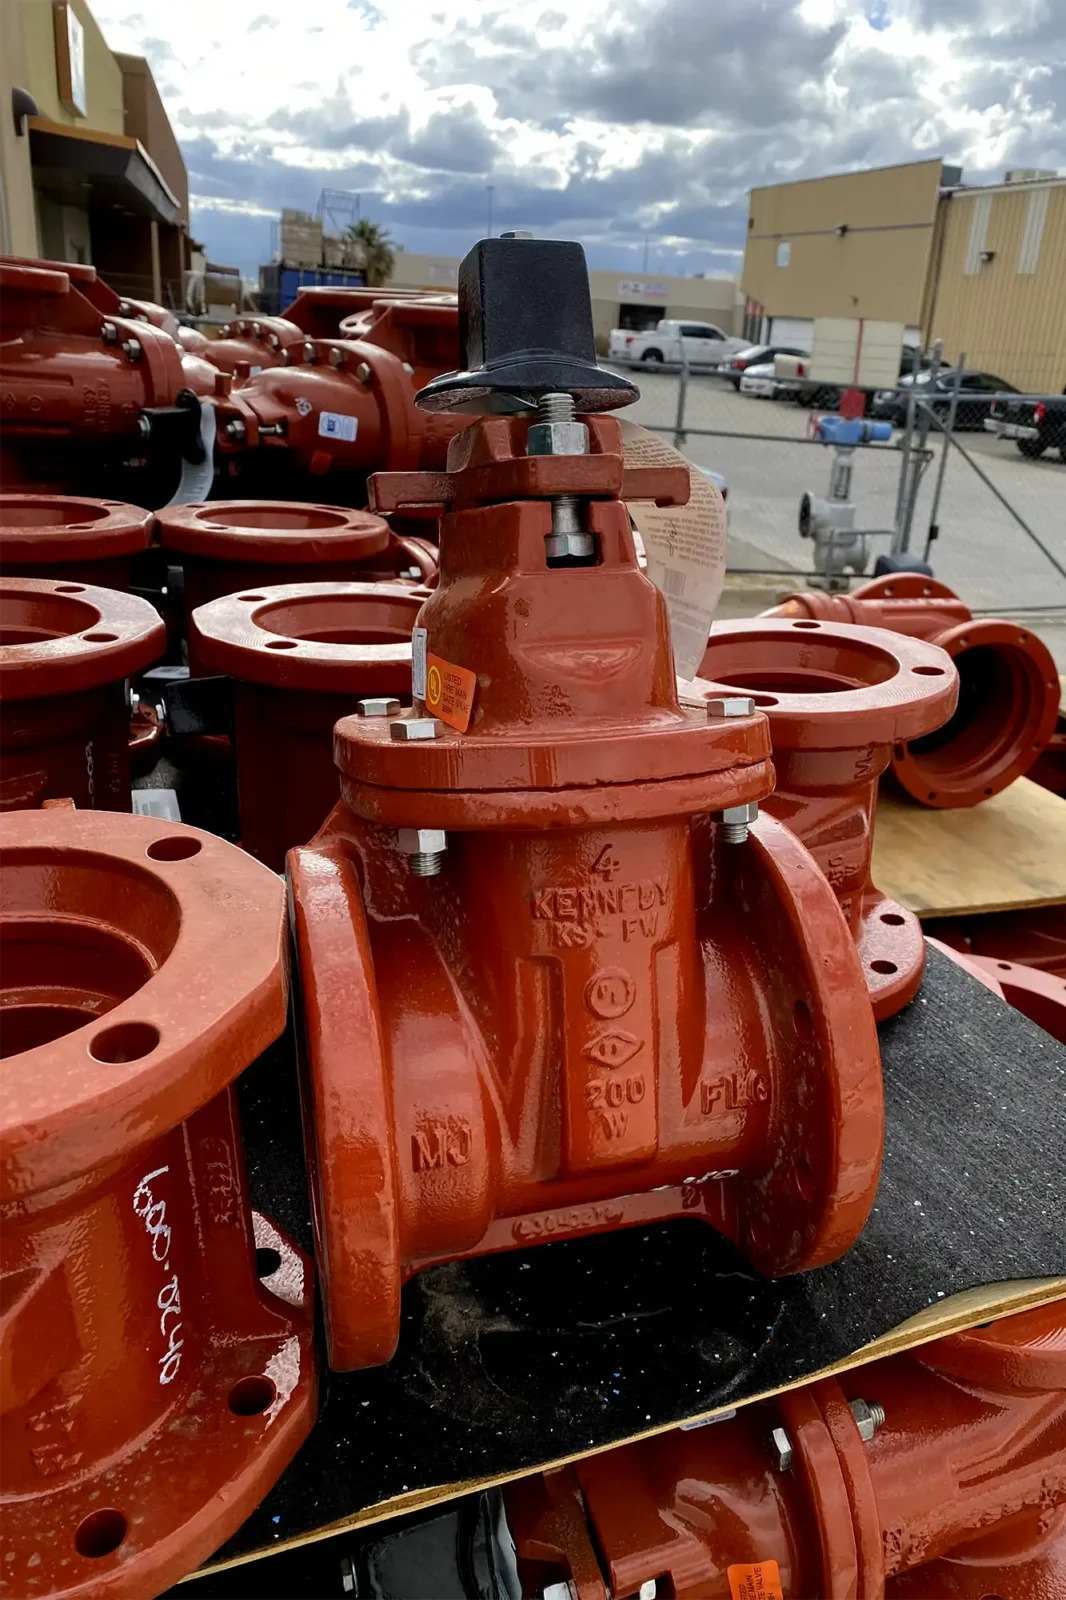 Des valves empilées sur un support en bois